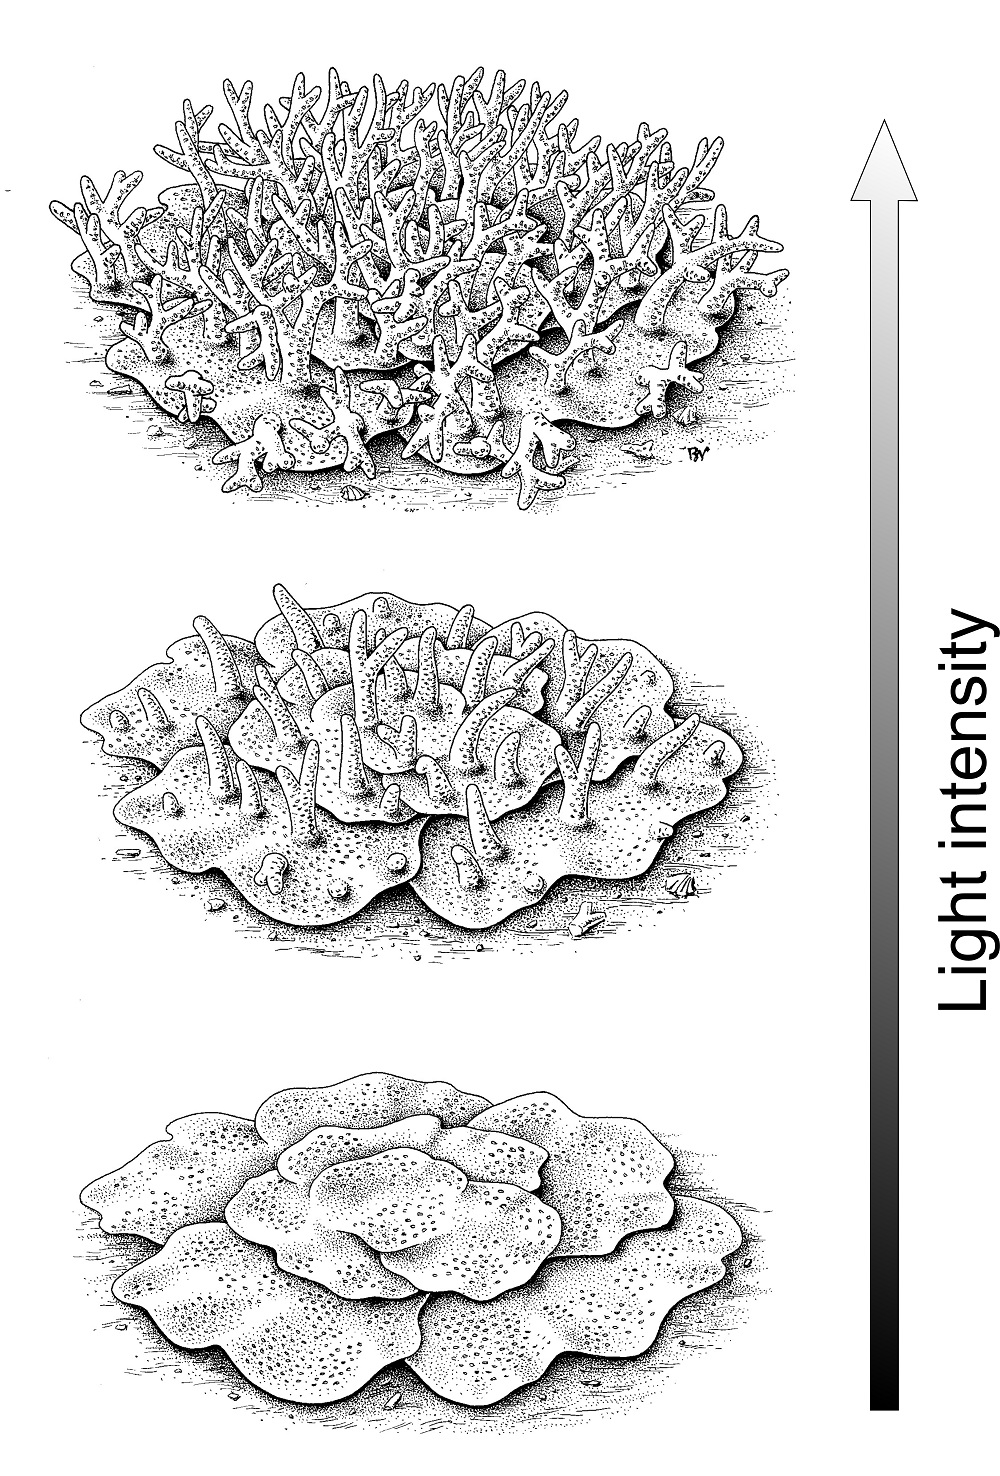 Rekonstrukcja kopalnych koralowców denkowych o zmiennej w zależności od światła morfologii. Rys. Bogusław Waksmundzki. Obie ilustracje pochodzą z pracy Majchrzyk et al. 2023.